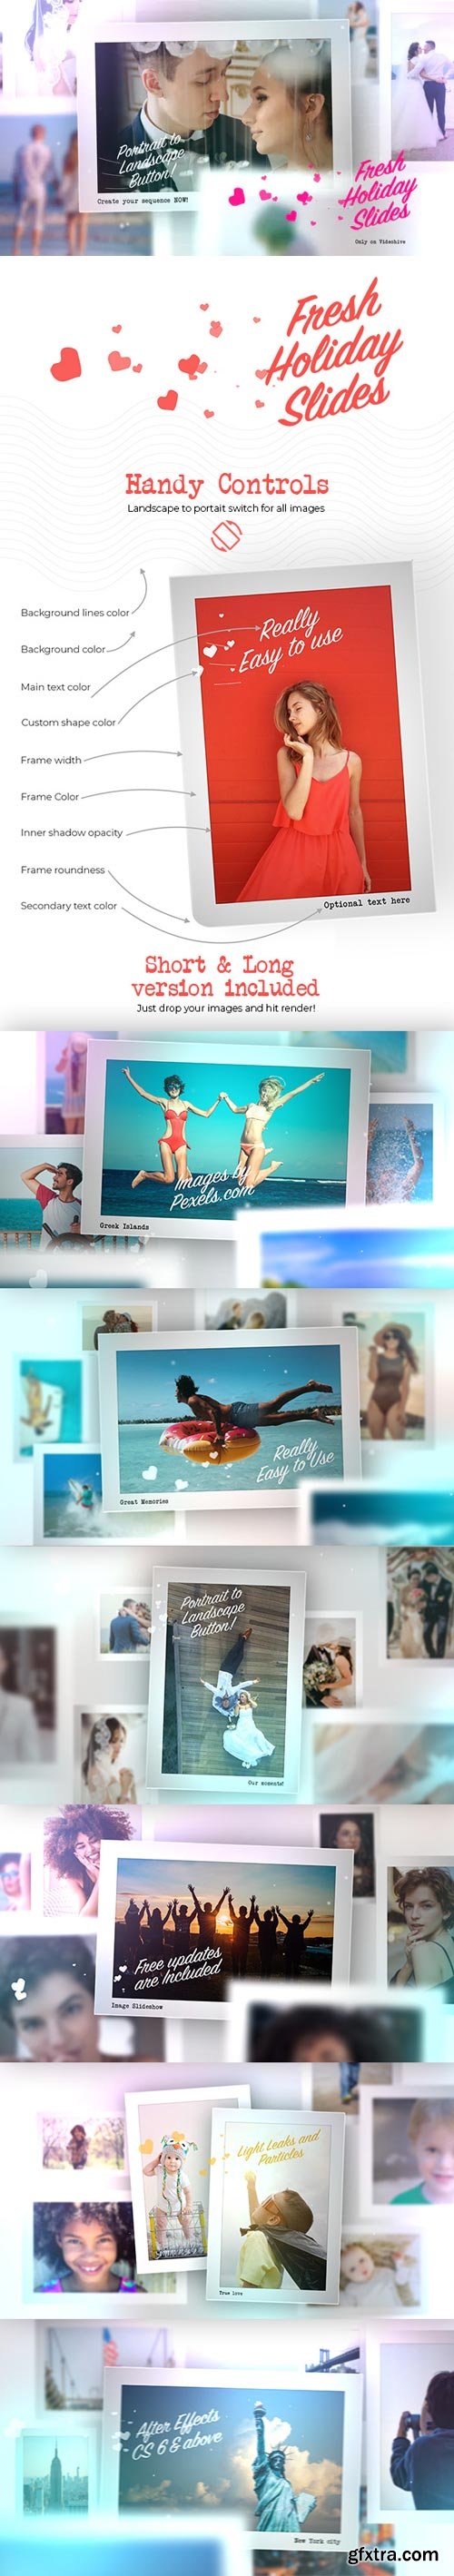 Videohive - Fresh Holiday photography Slides v2 - 24020810